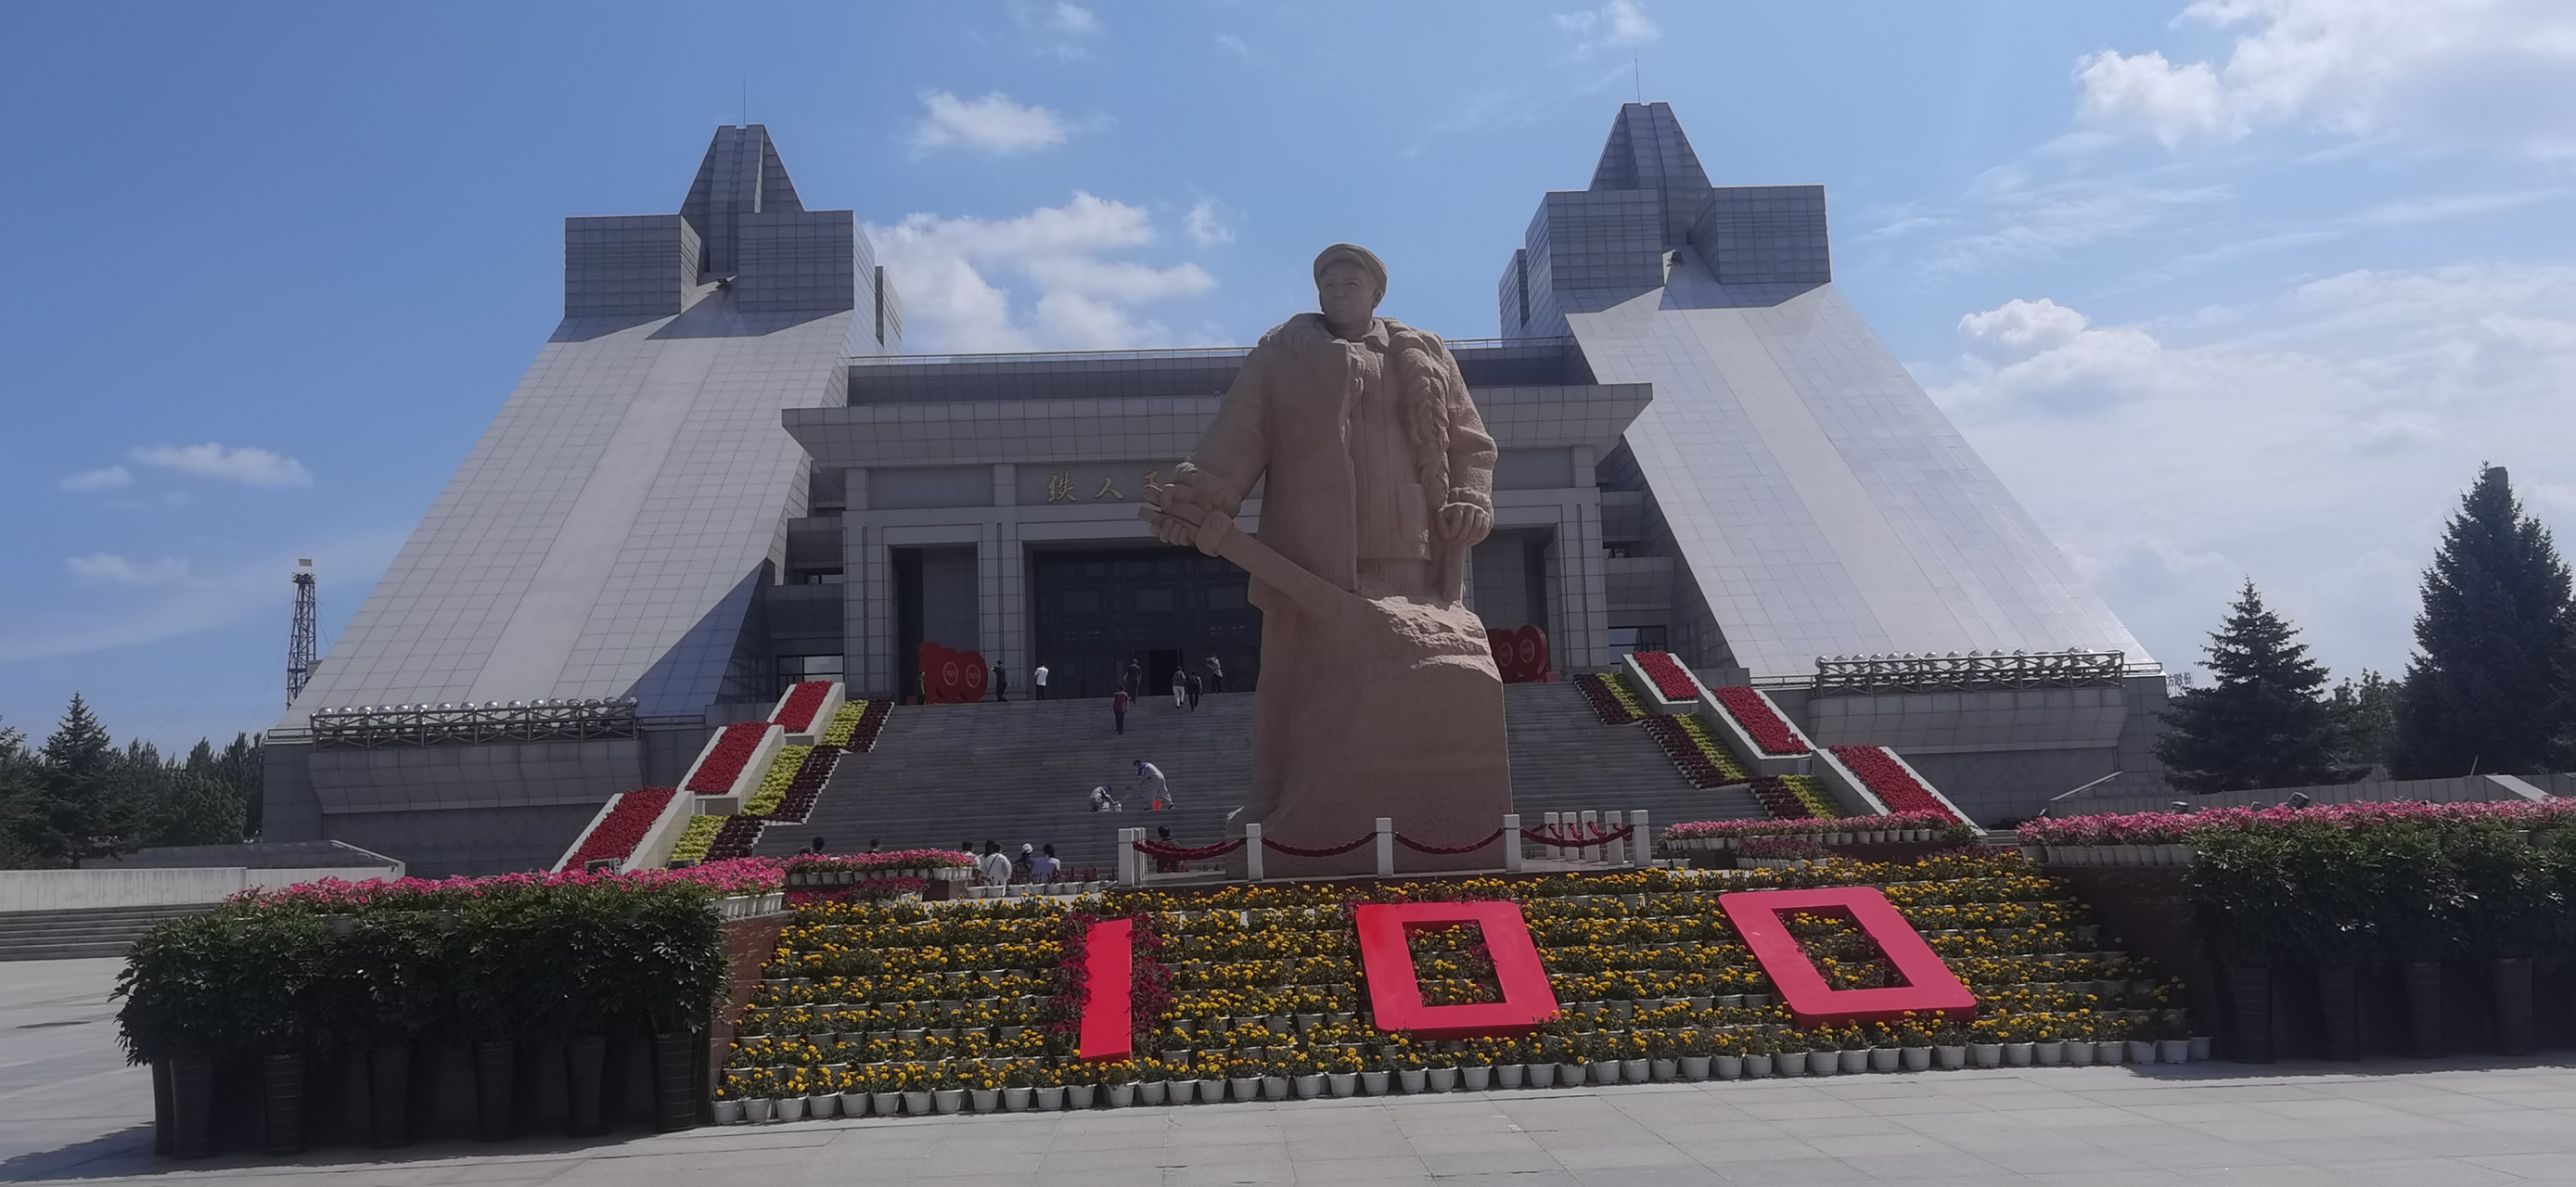 今天有幸参观了位于大庆的铁人王进喜纪念馆,铁人那种为油奉献的精神